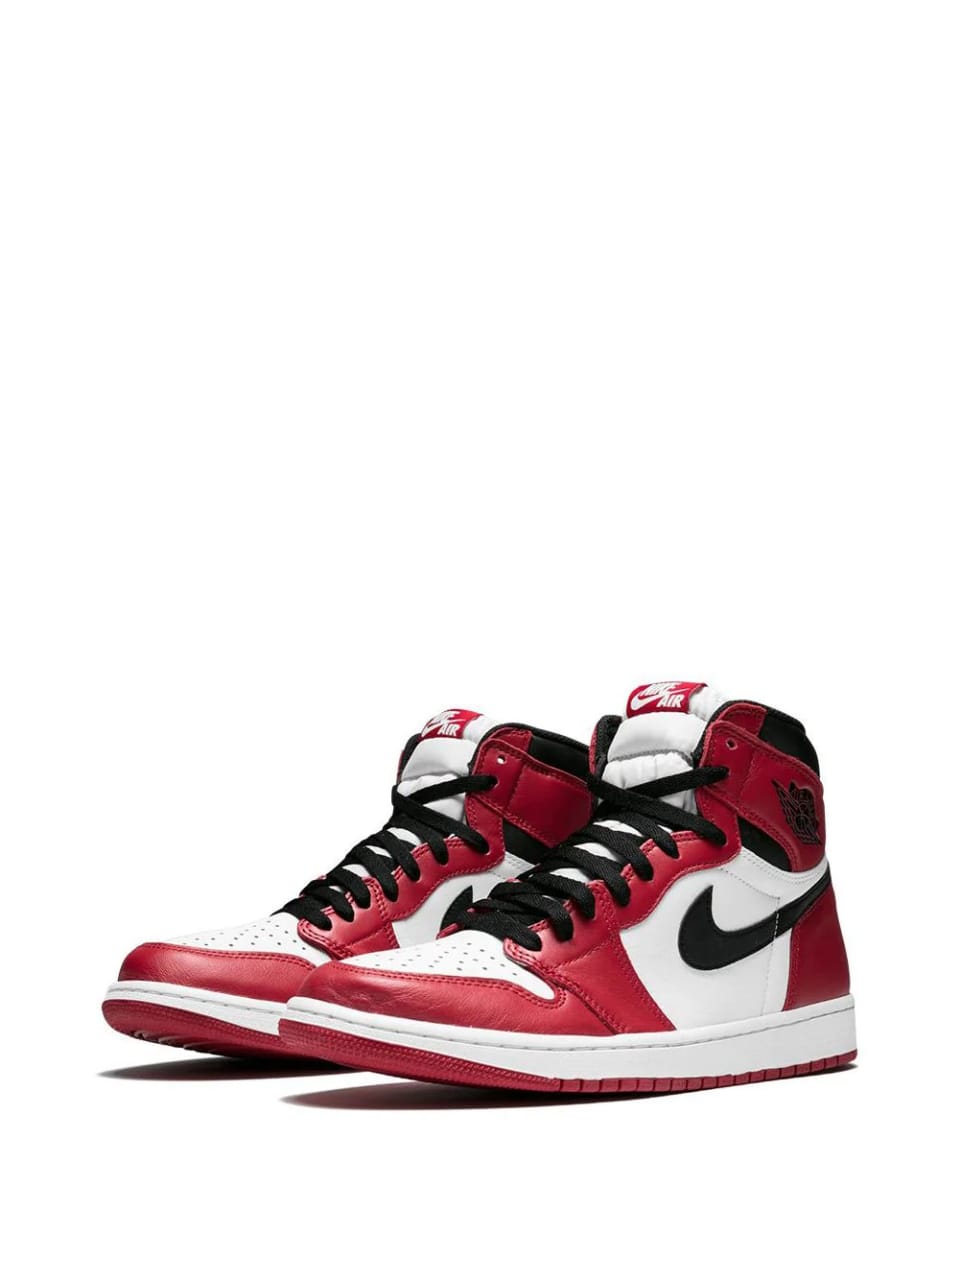 Nike Air Jordan 1 Retro High OG Chicago